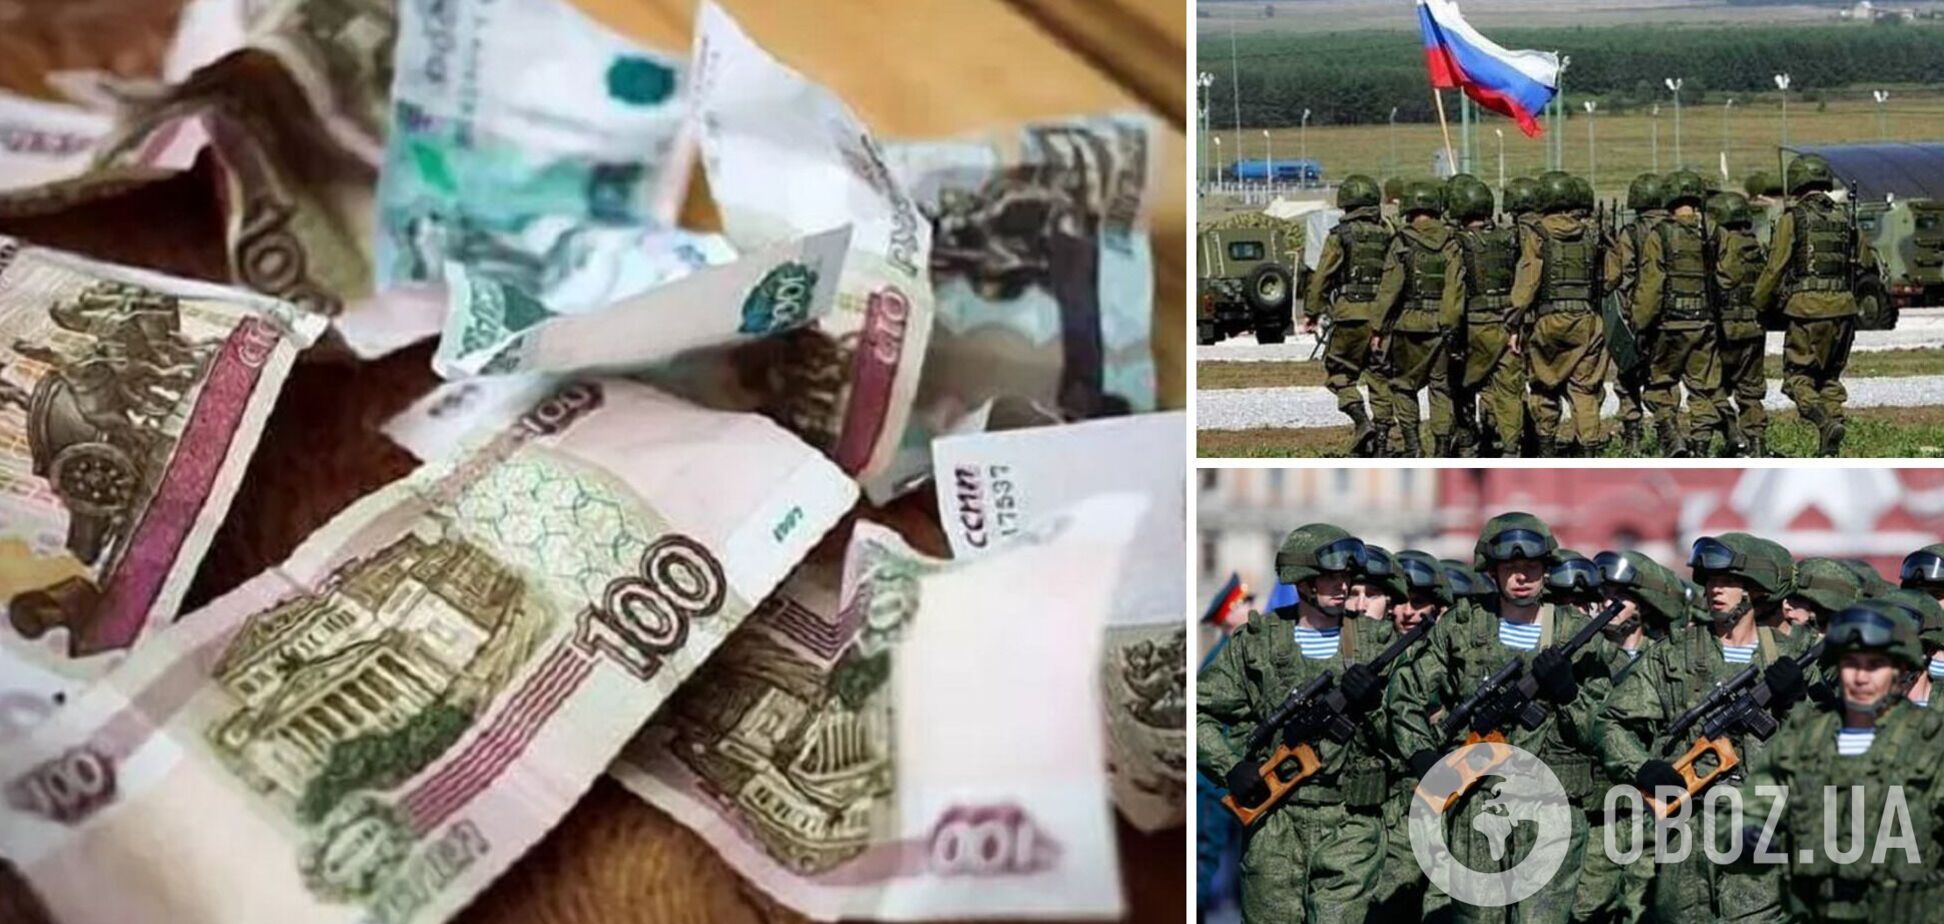 Окупанти готові платити значні суми, щоб поїхати з України